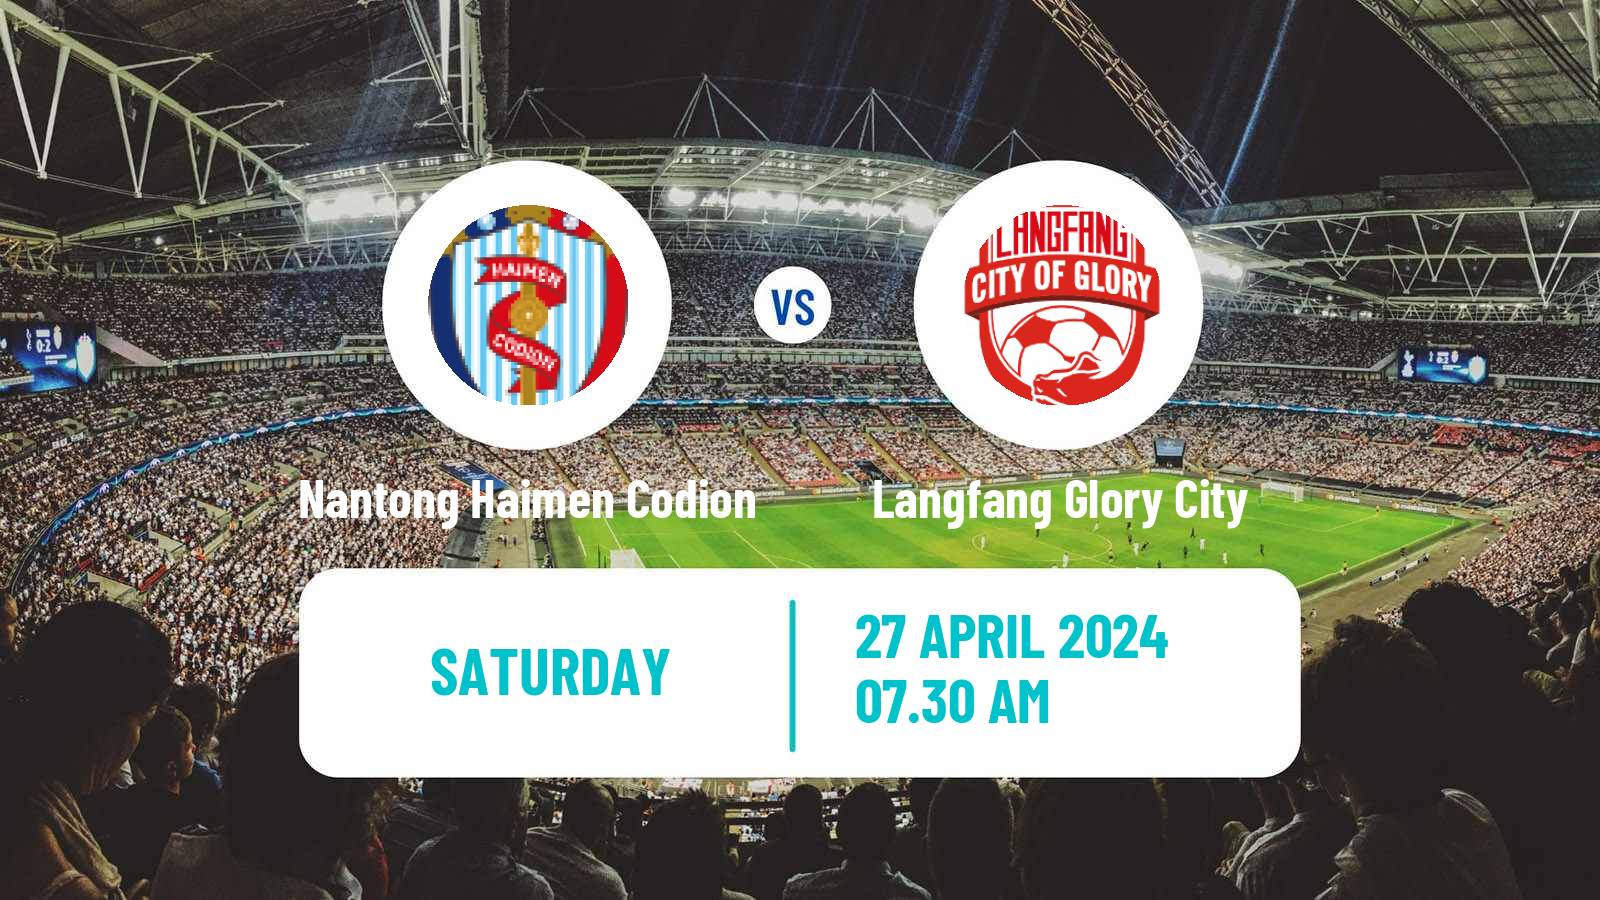 Soccer Chinese Yi League Nantong Haimen Codion - Langfang Glory City